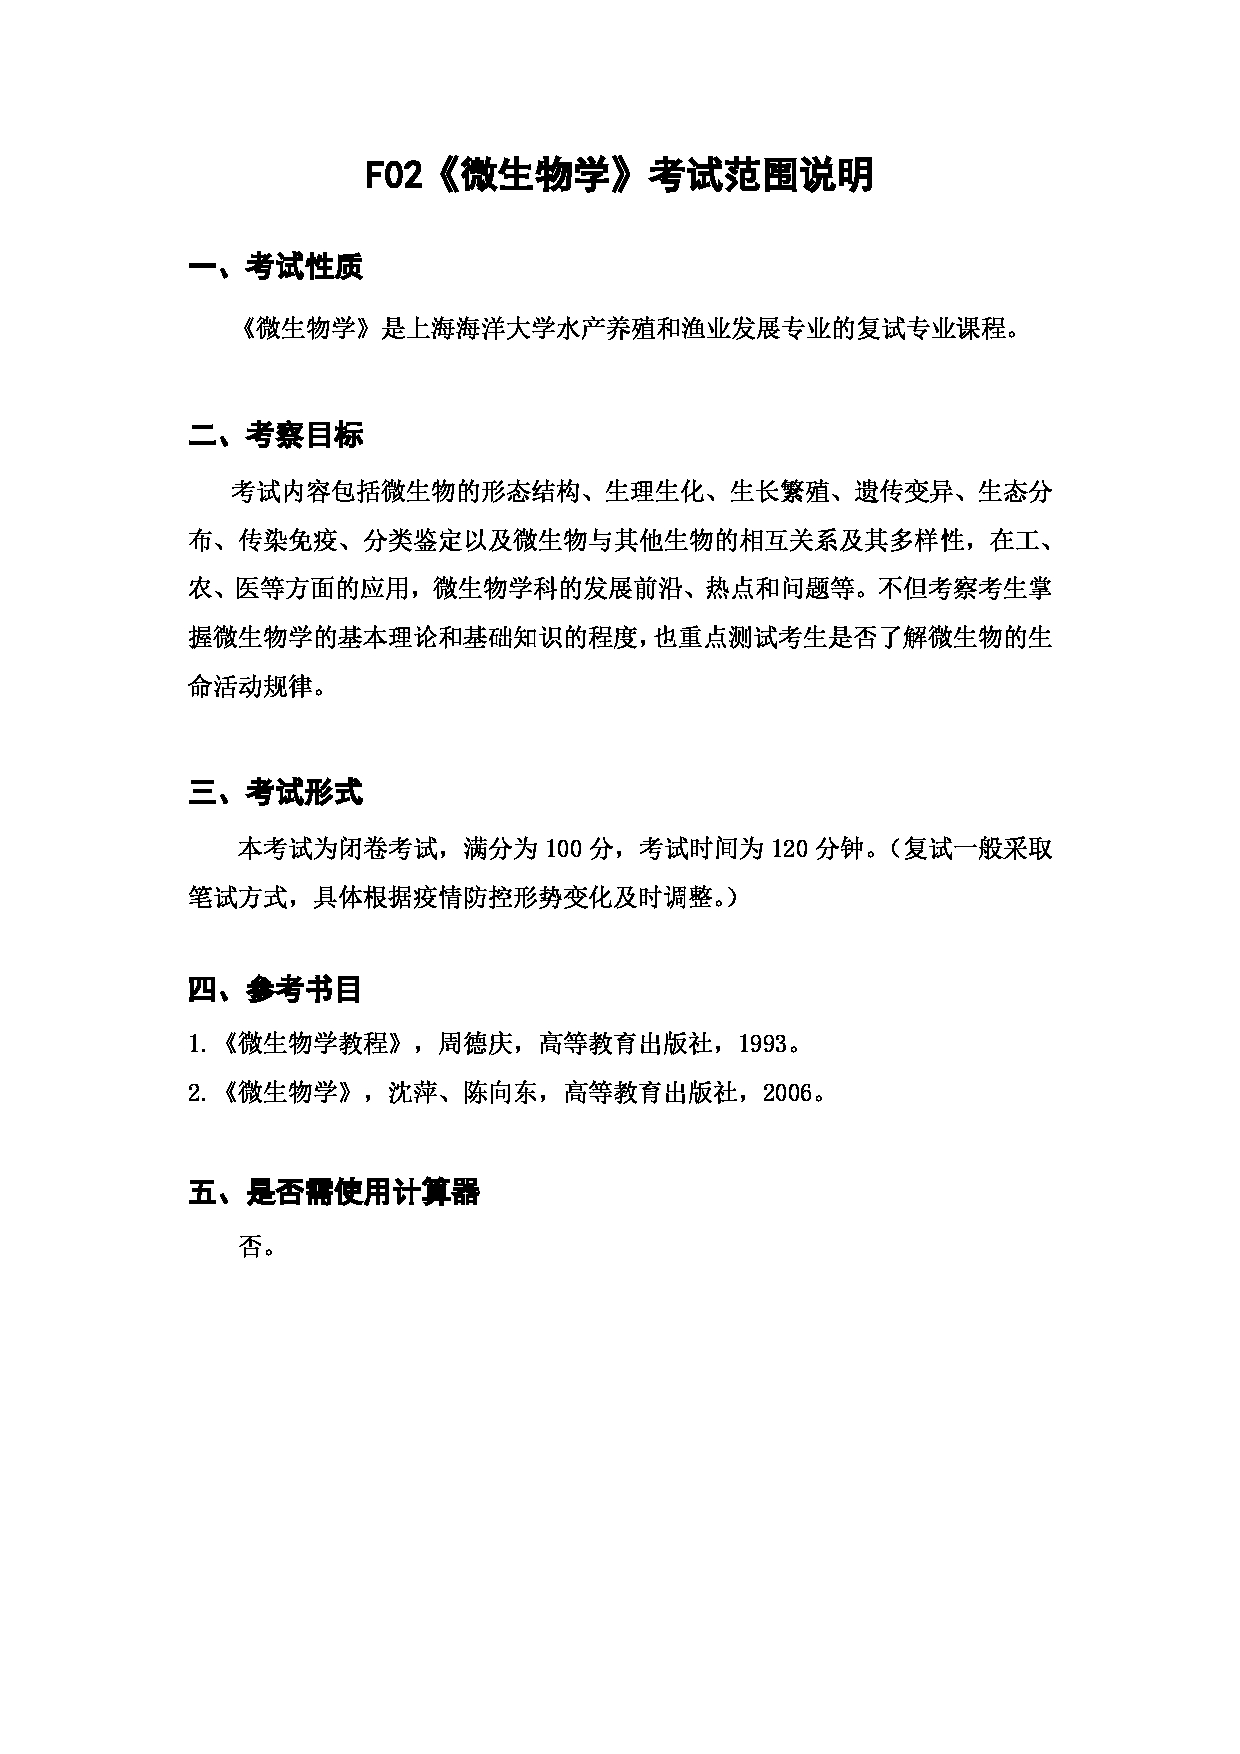 上海海洋大学2023年考研自命题科目 F02《微生物学》 考试范围第1页